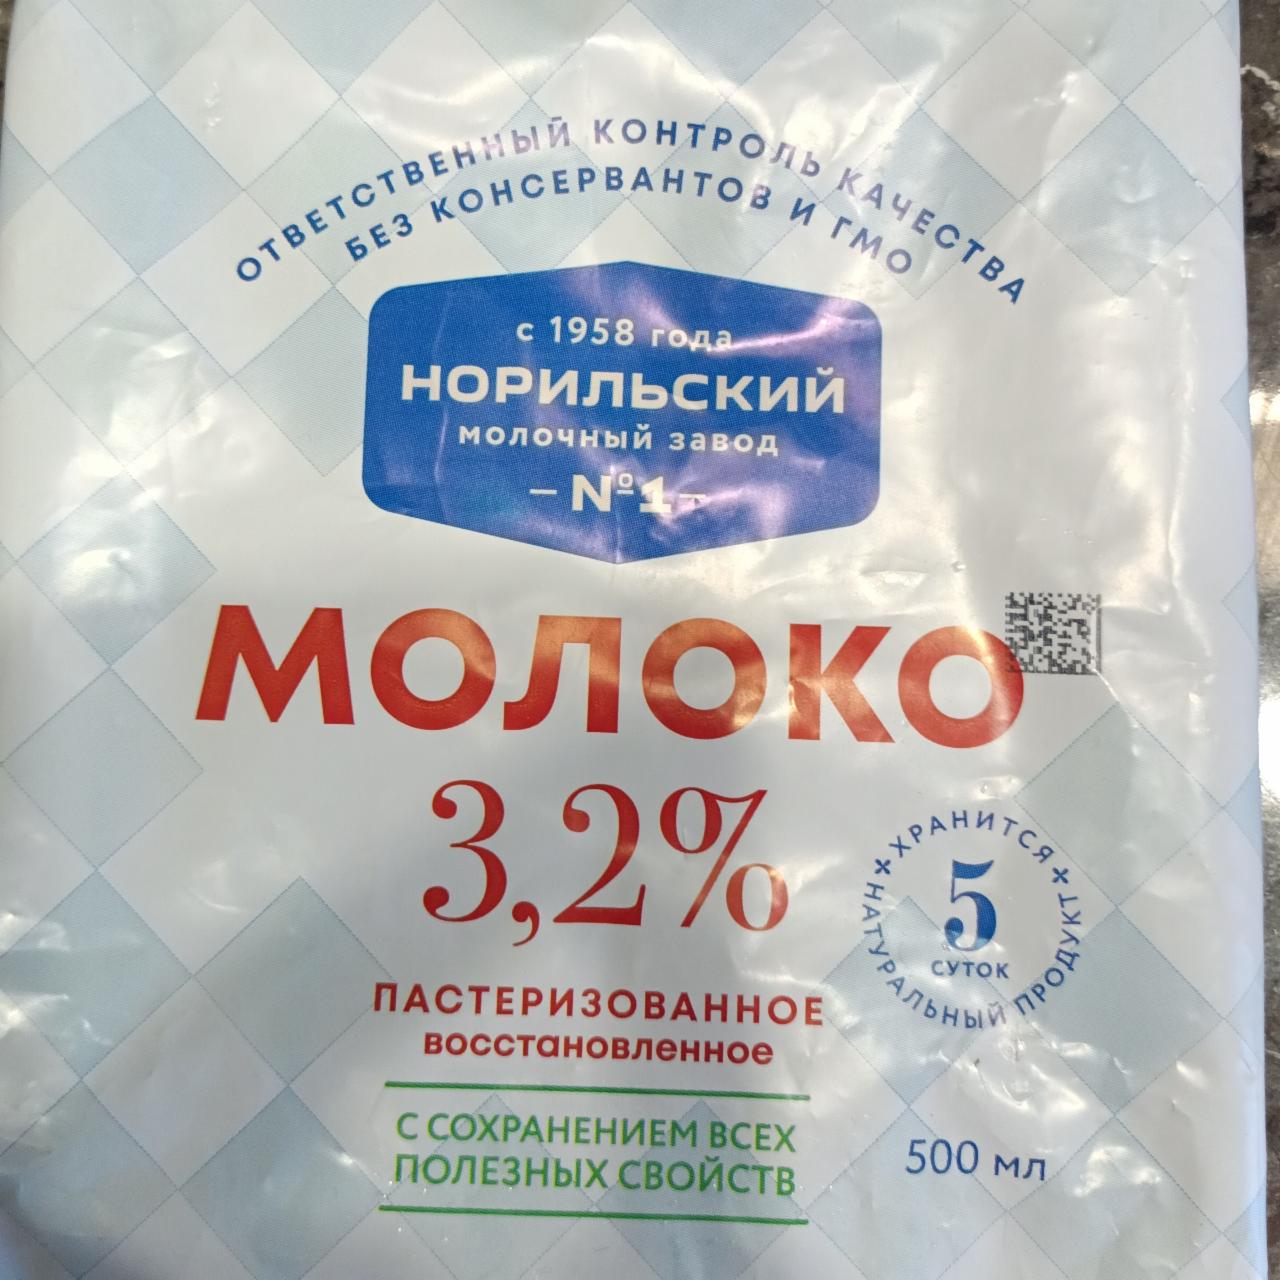 Фото - Молоко 3.2% Норильский молочный завод